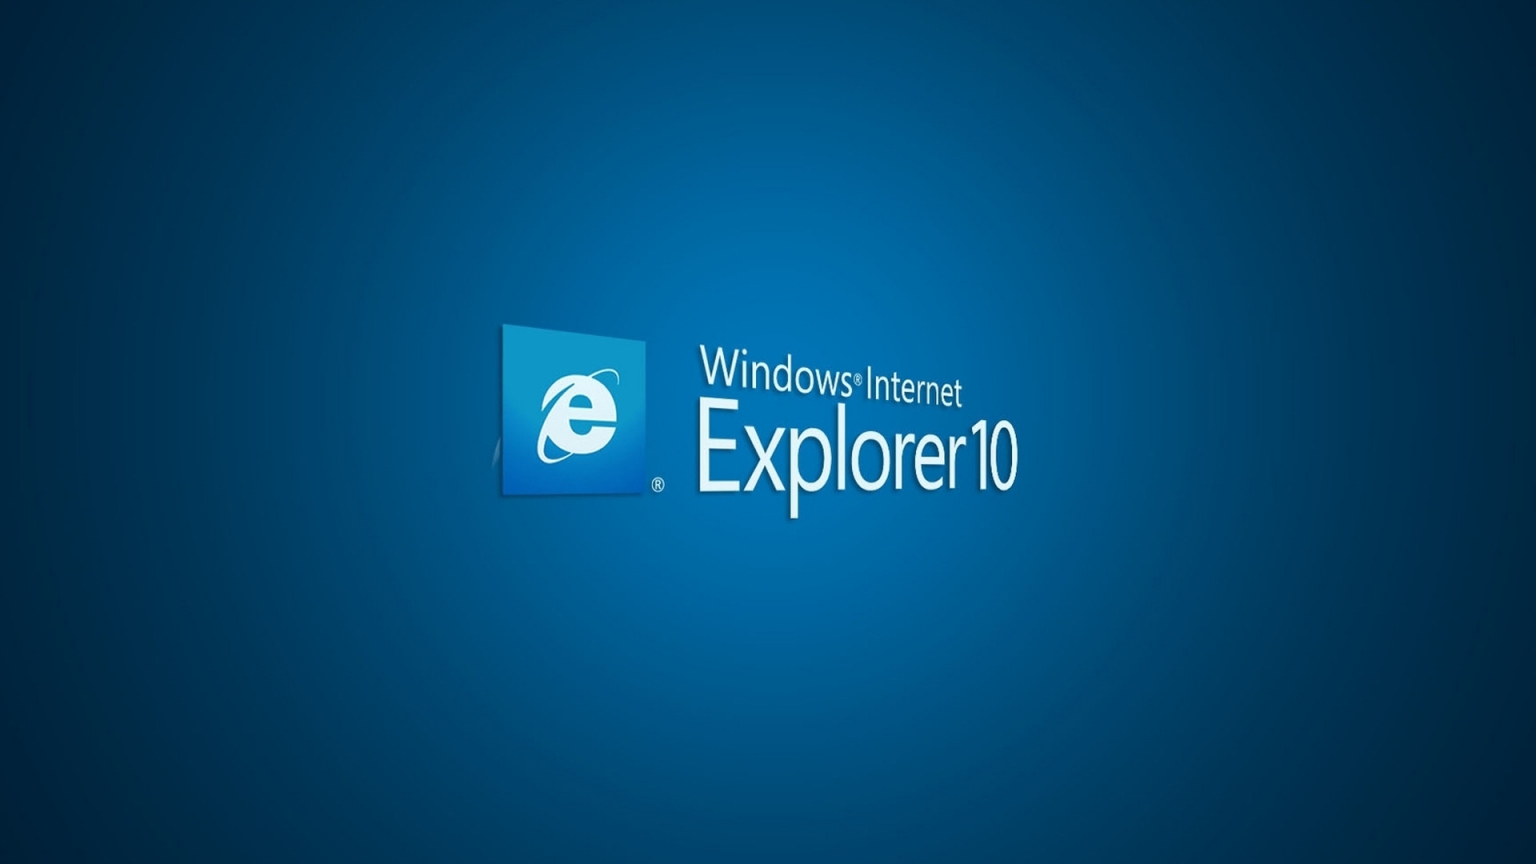 Internet Explorer 10 for 1536 x 864 HDTV resolution